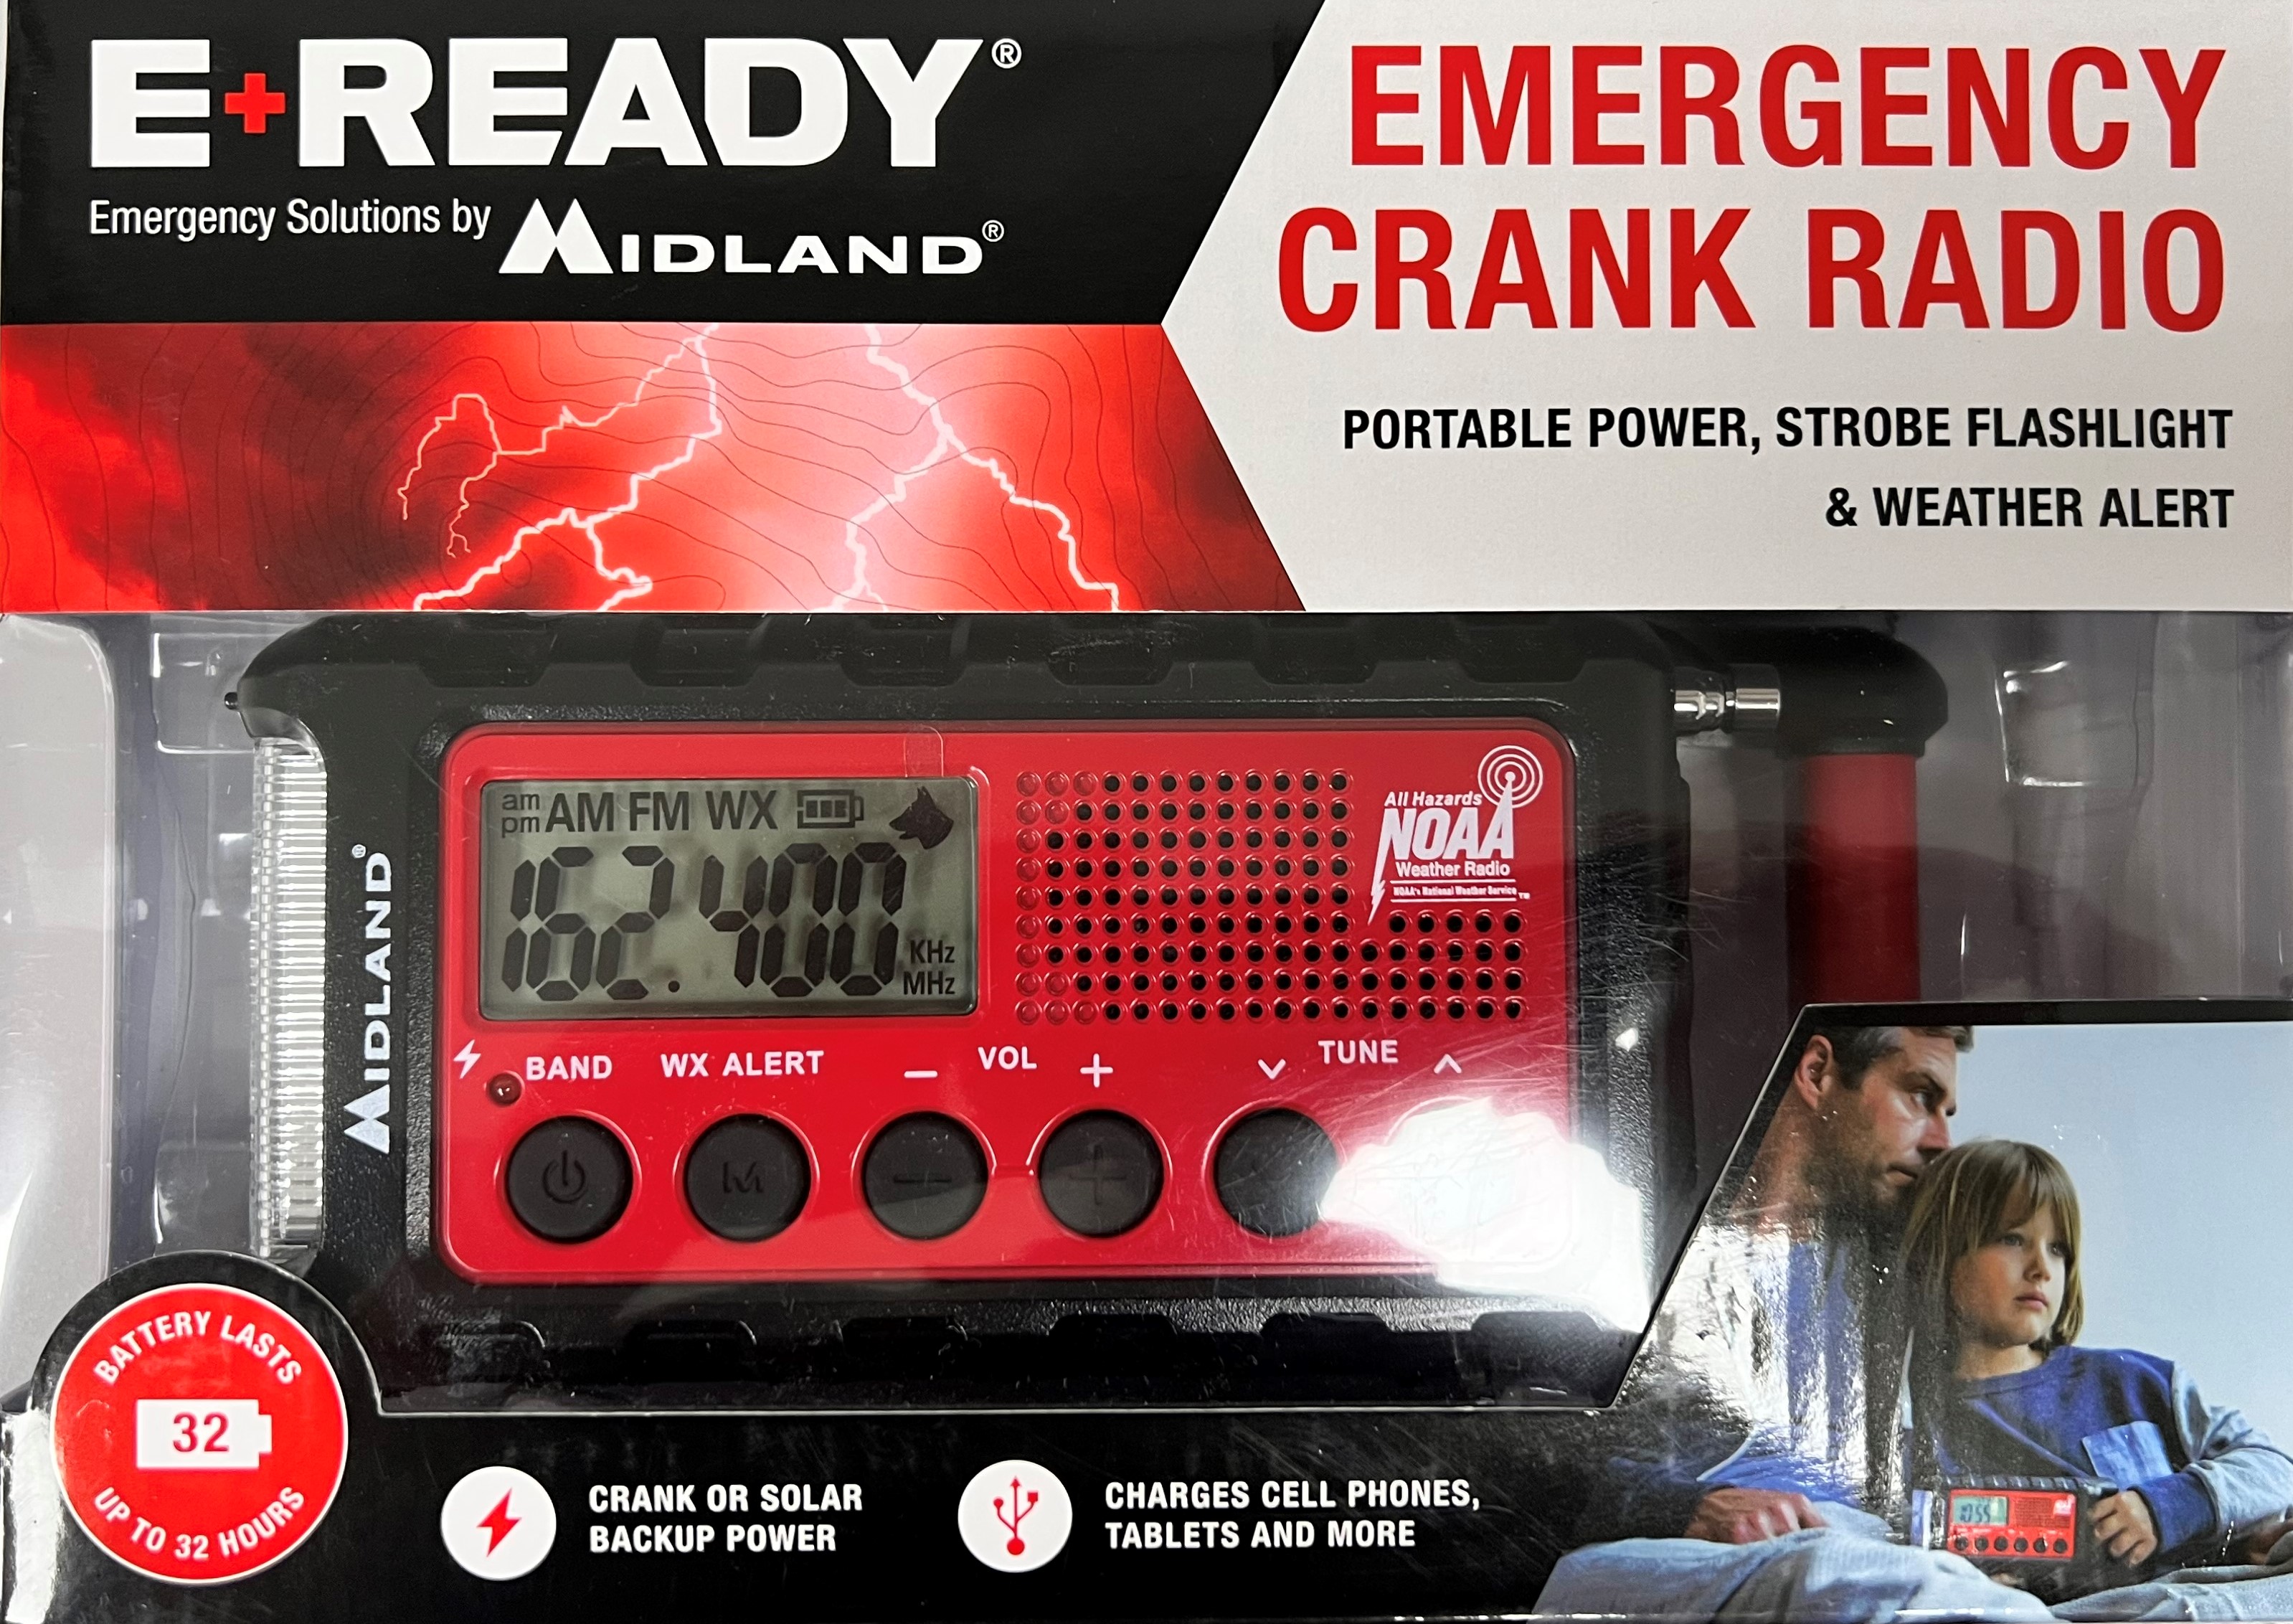 Emergency Crank Radio